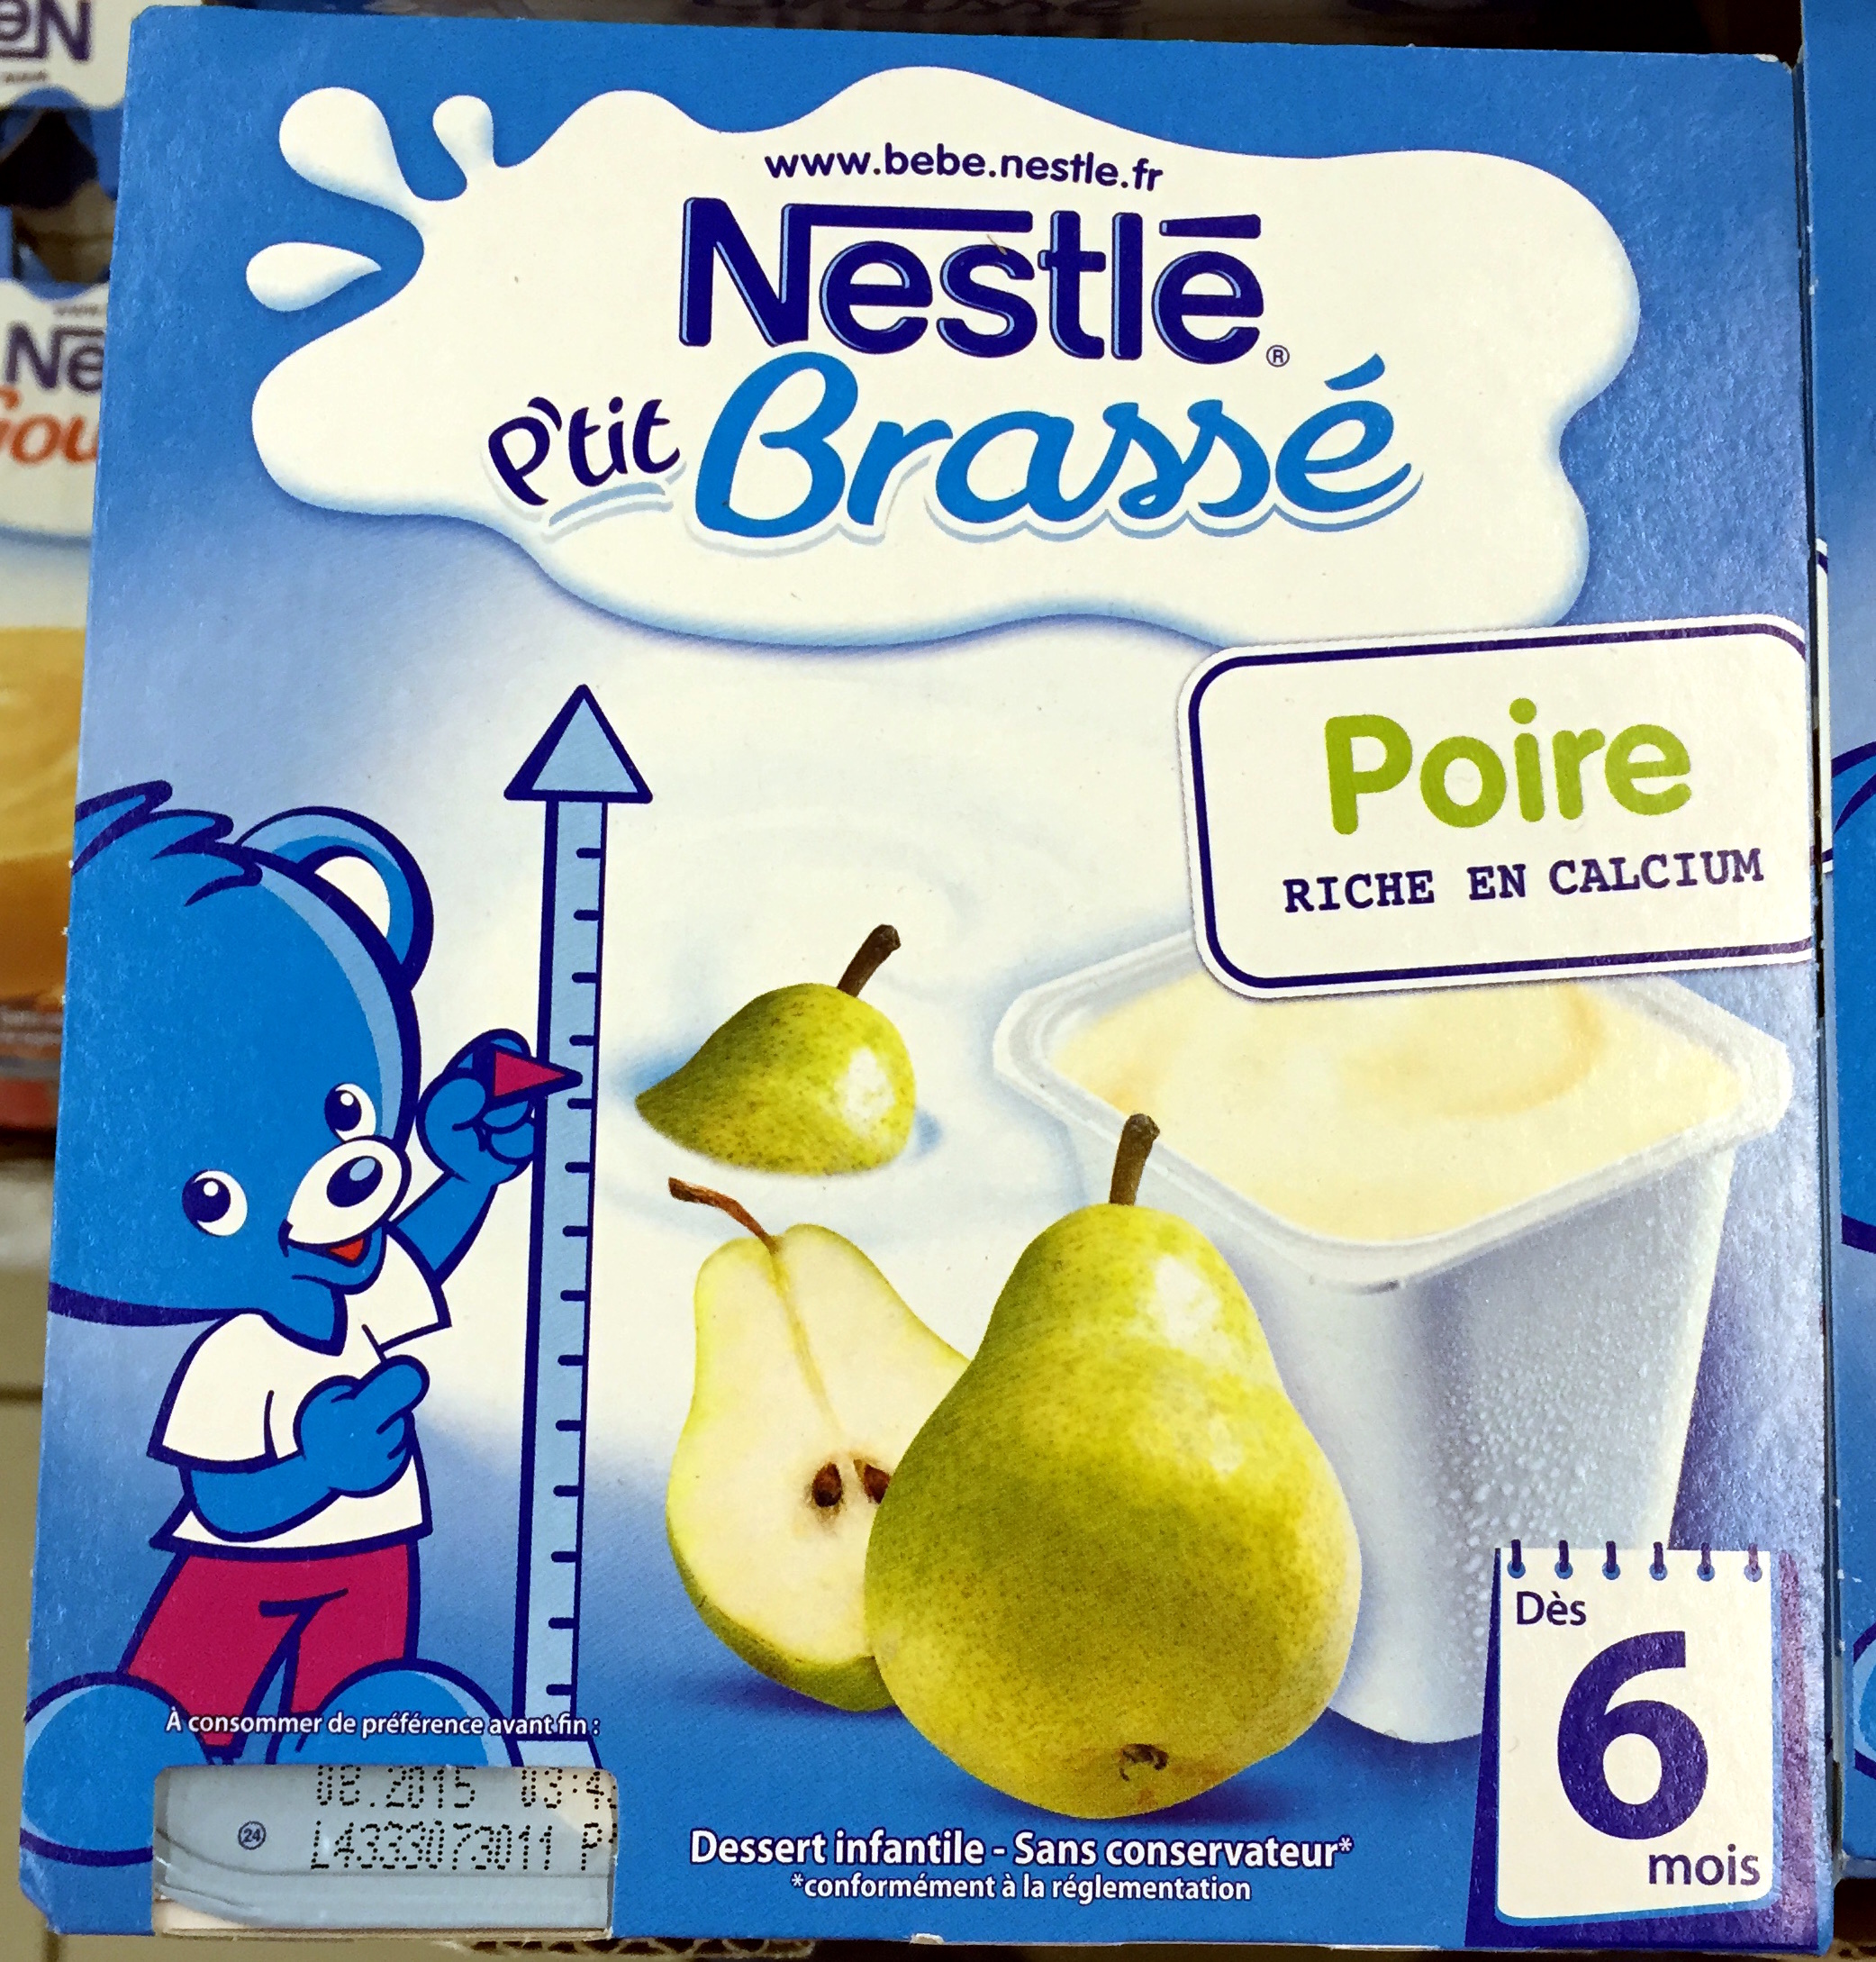 P'tit Brassé Poire - Producto - fr